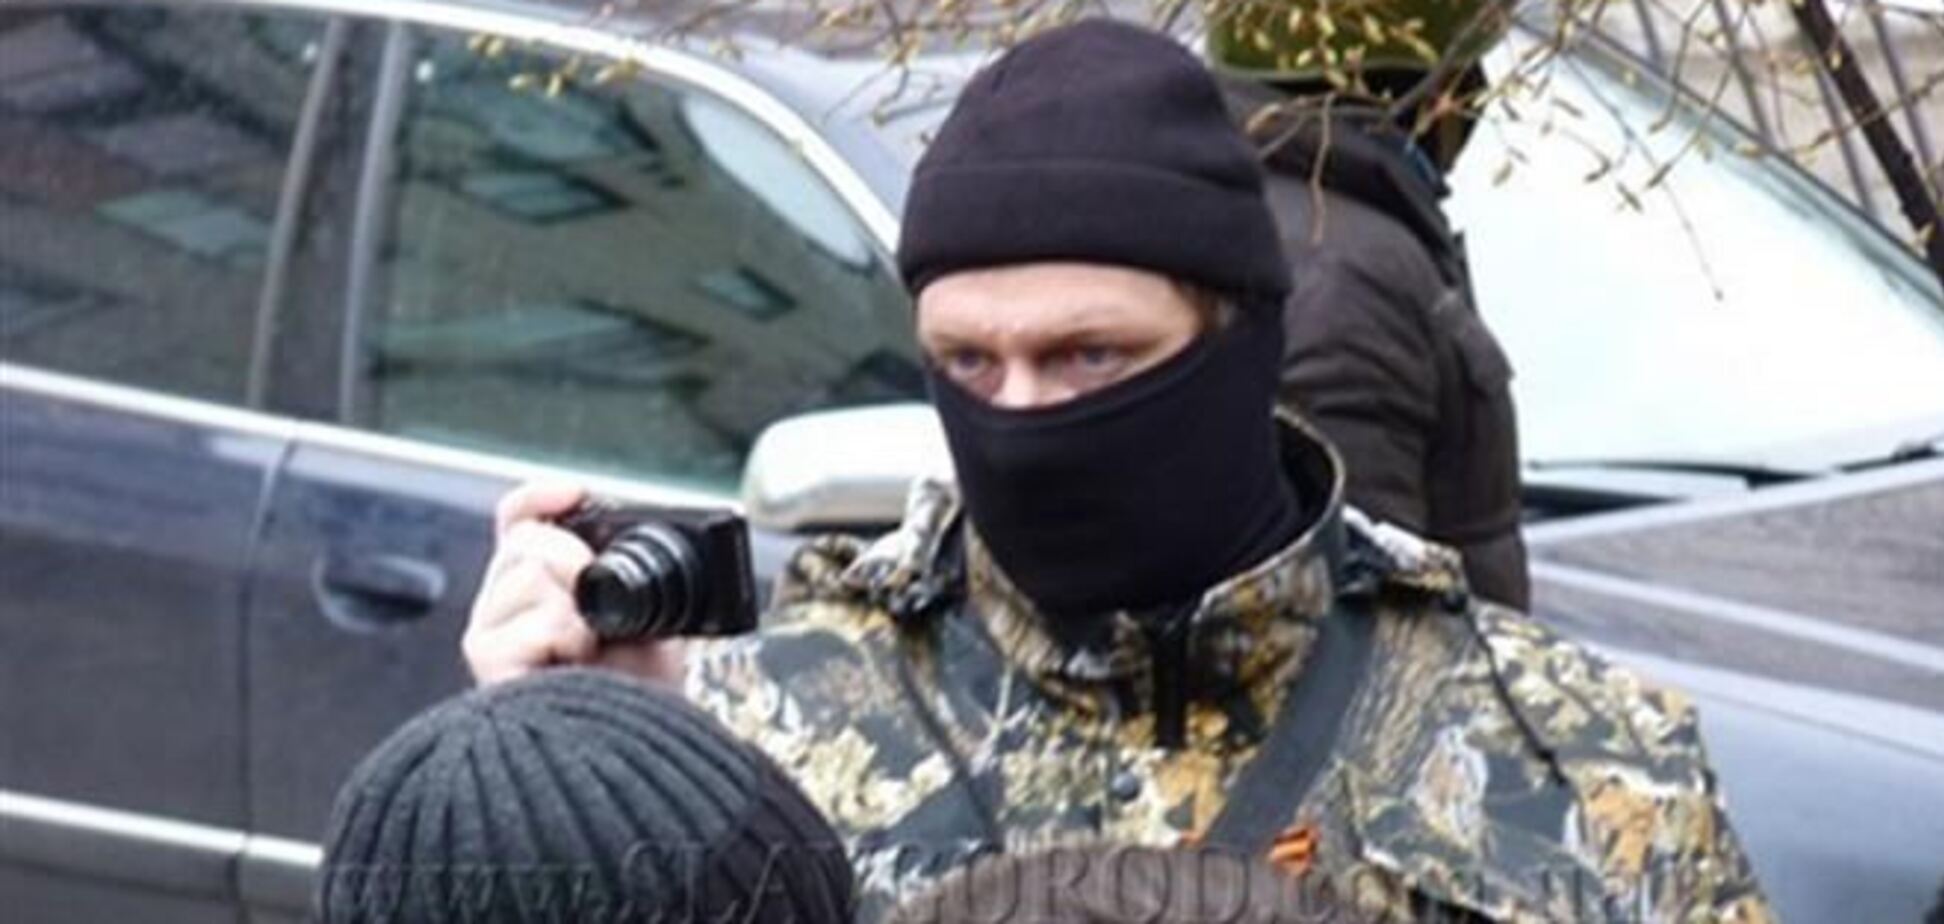 Люди в масках выкрали главреда издания Gorlovka.ua